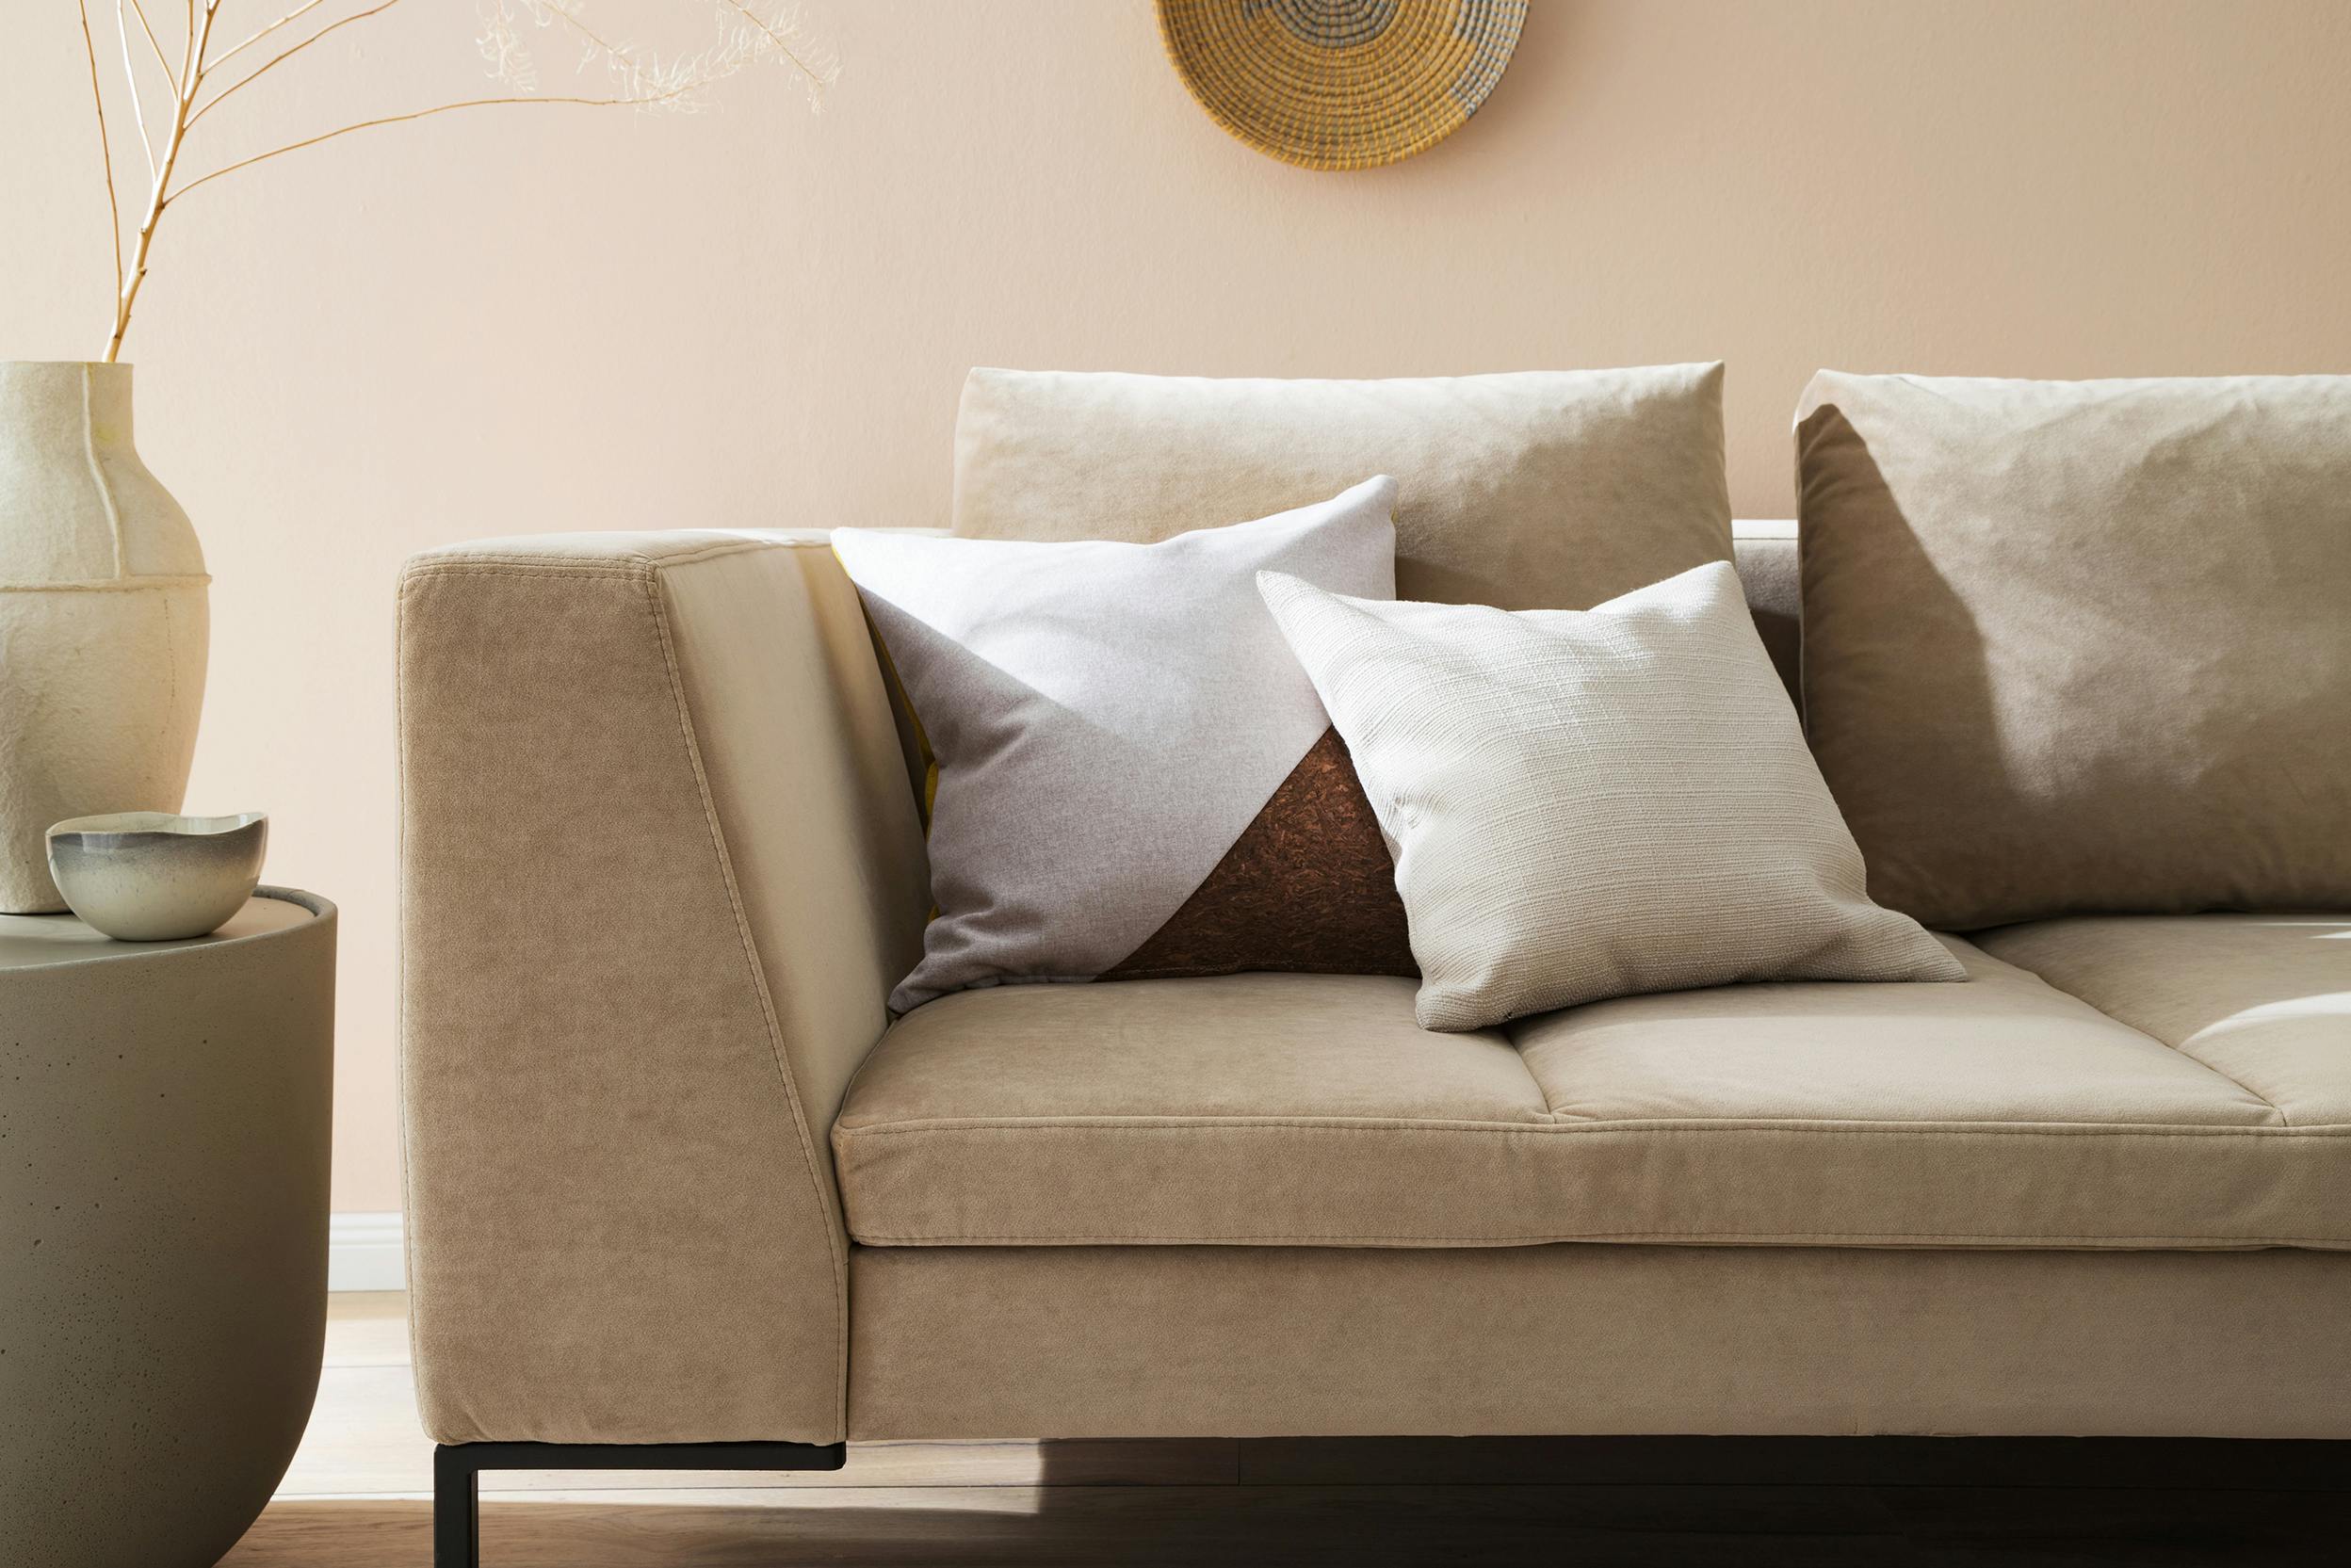 Sandfarbenes Sofa in Wohnzimmer eingerichtet in natürlichen Farbtönen